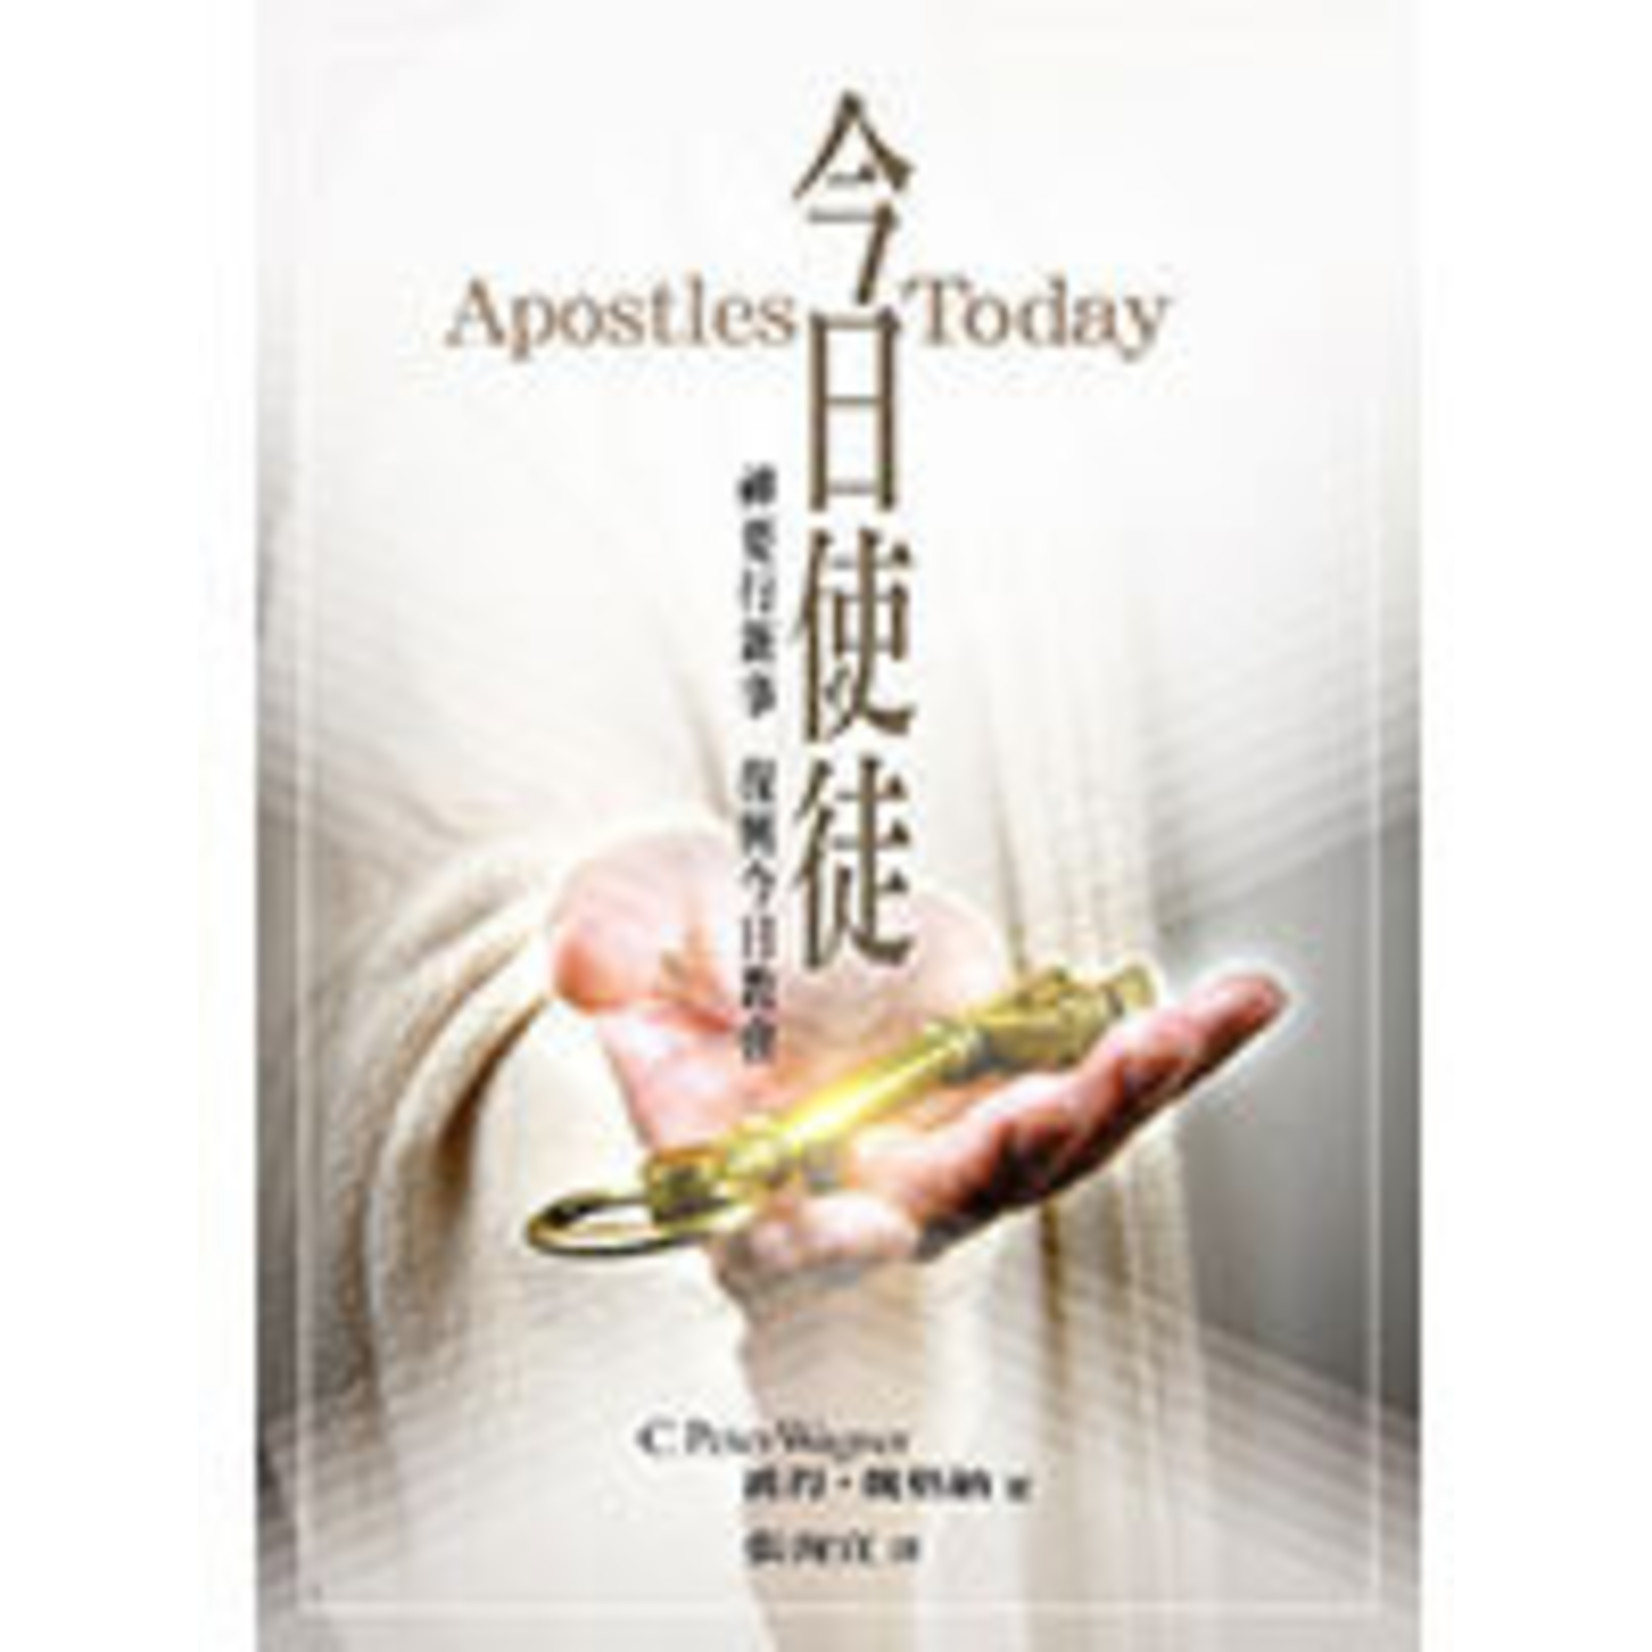 橄欖 Olive Press 今日使徒：神要行新事 復興今日教會 Apostles Today